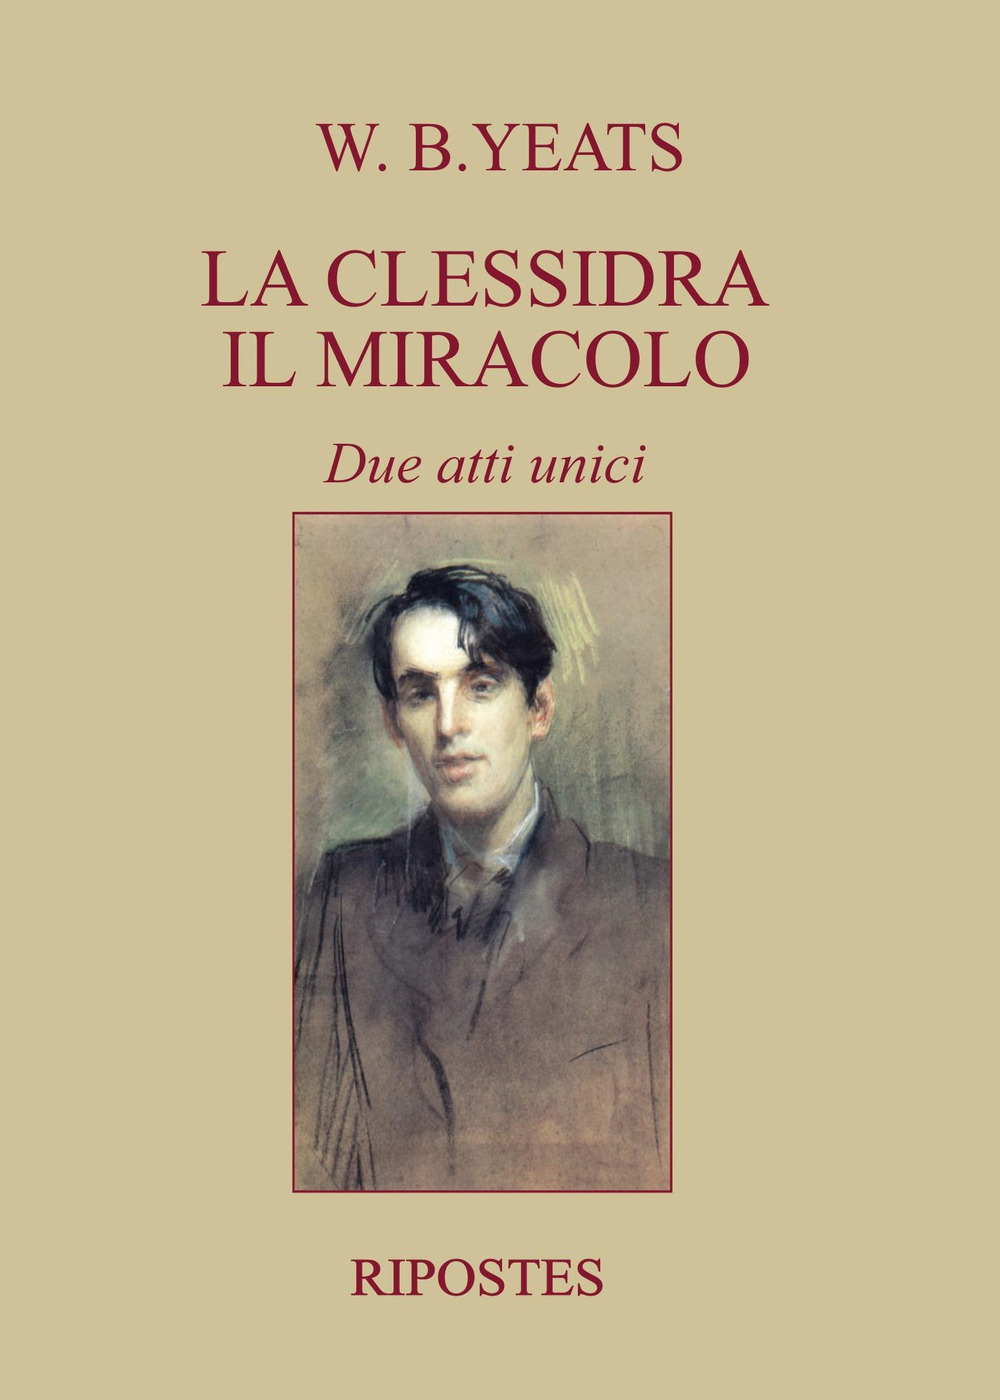 Image of La clessidra, Il miracolo. Due atti unici